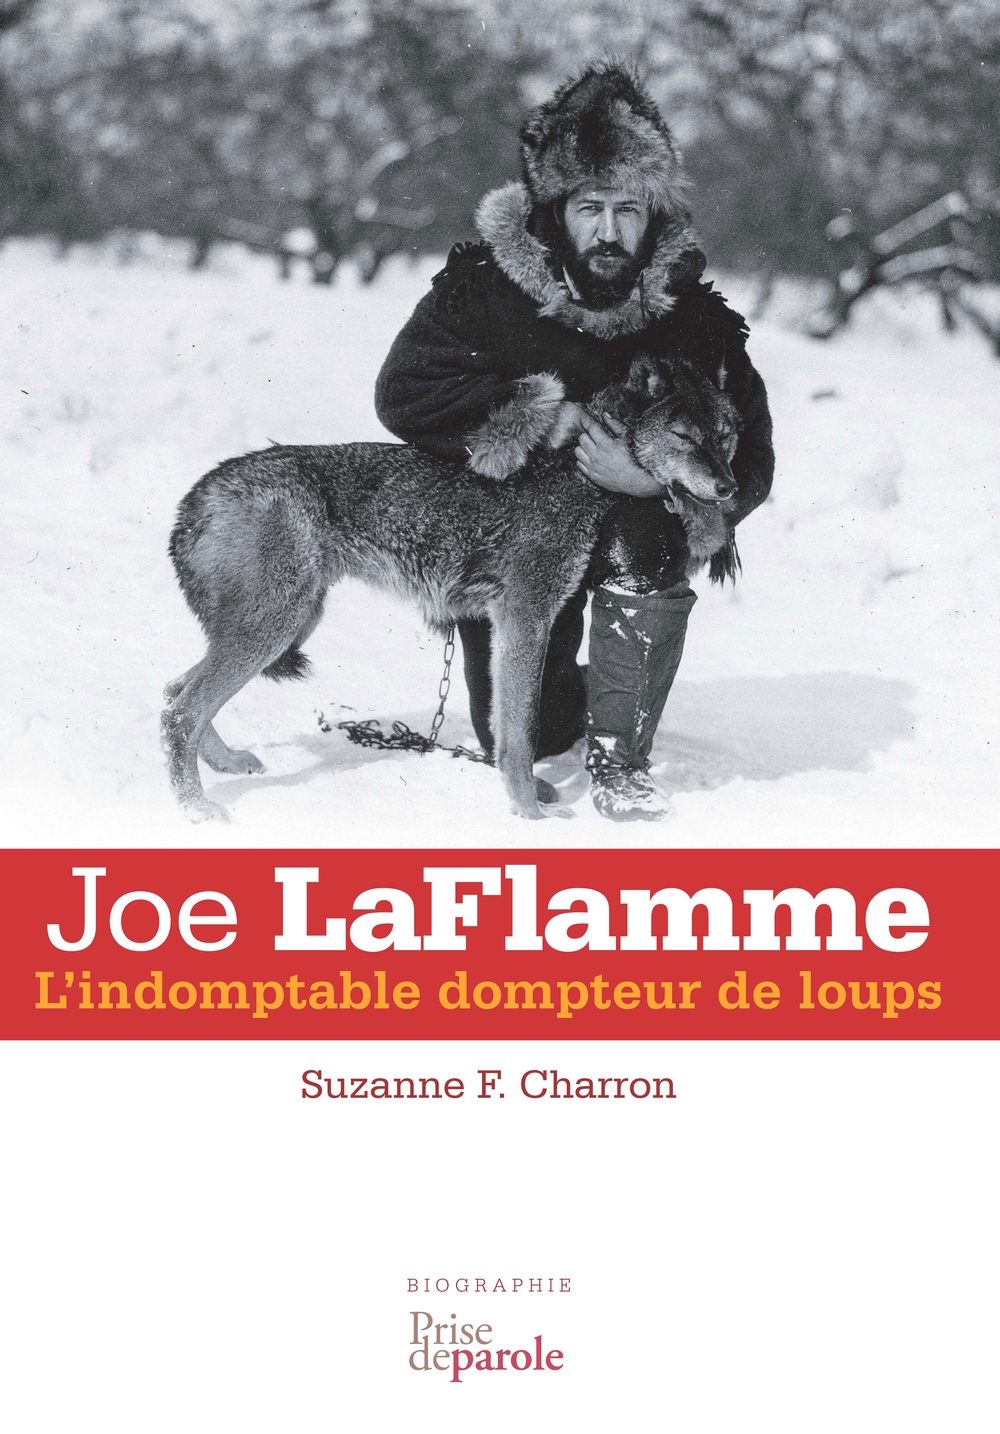 Joe LaFlamme